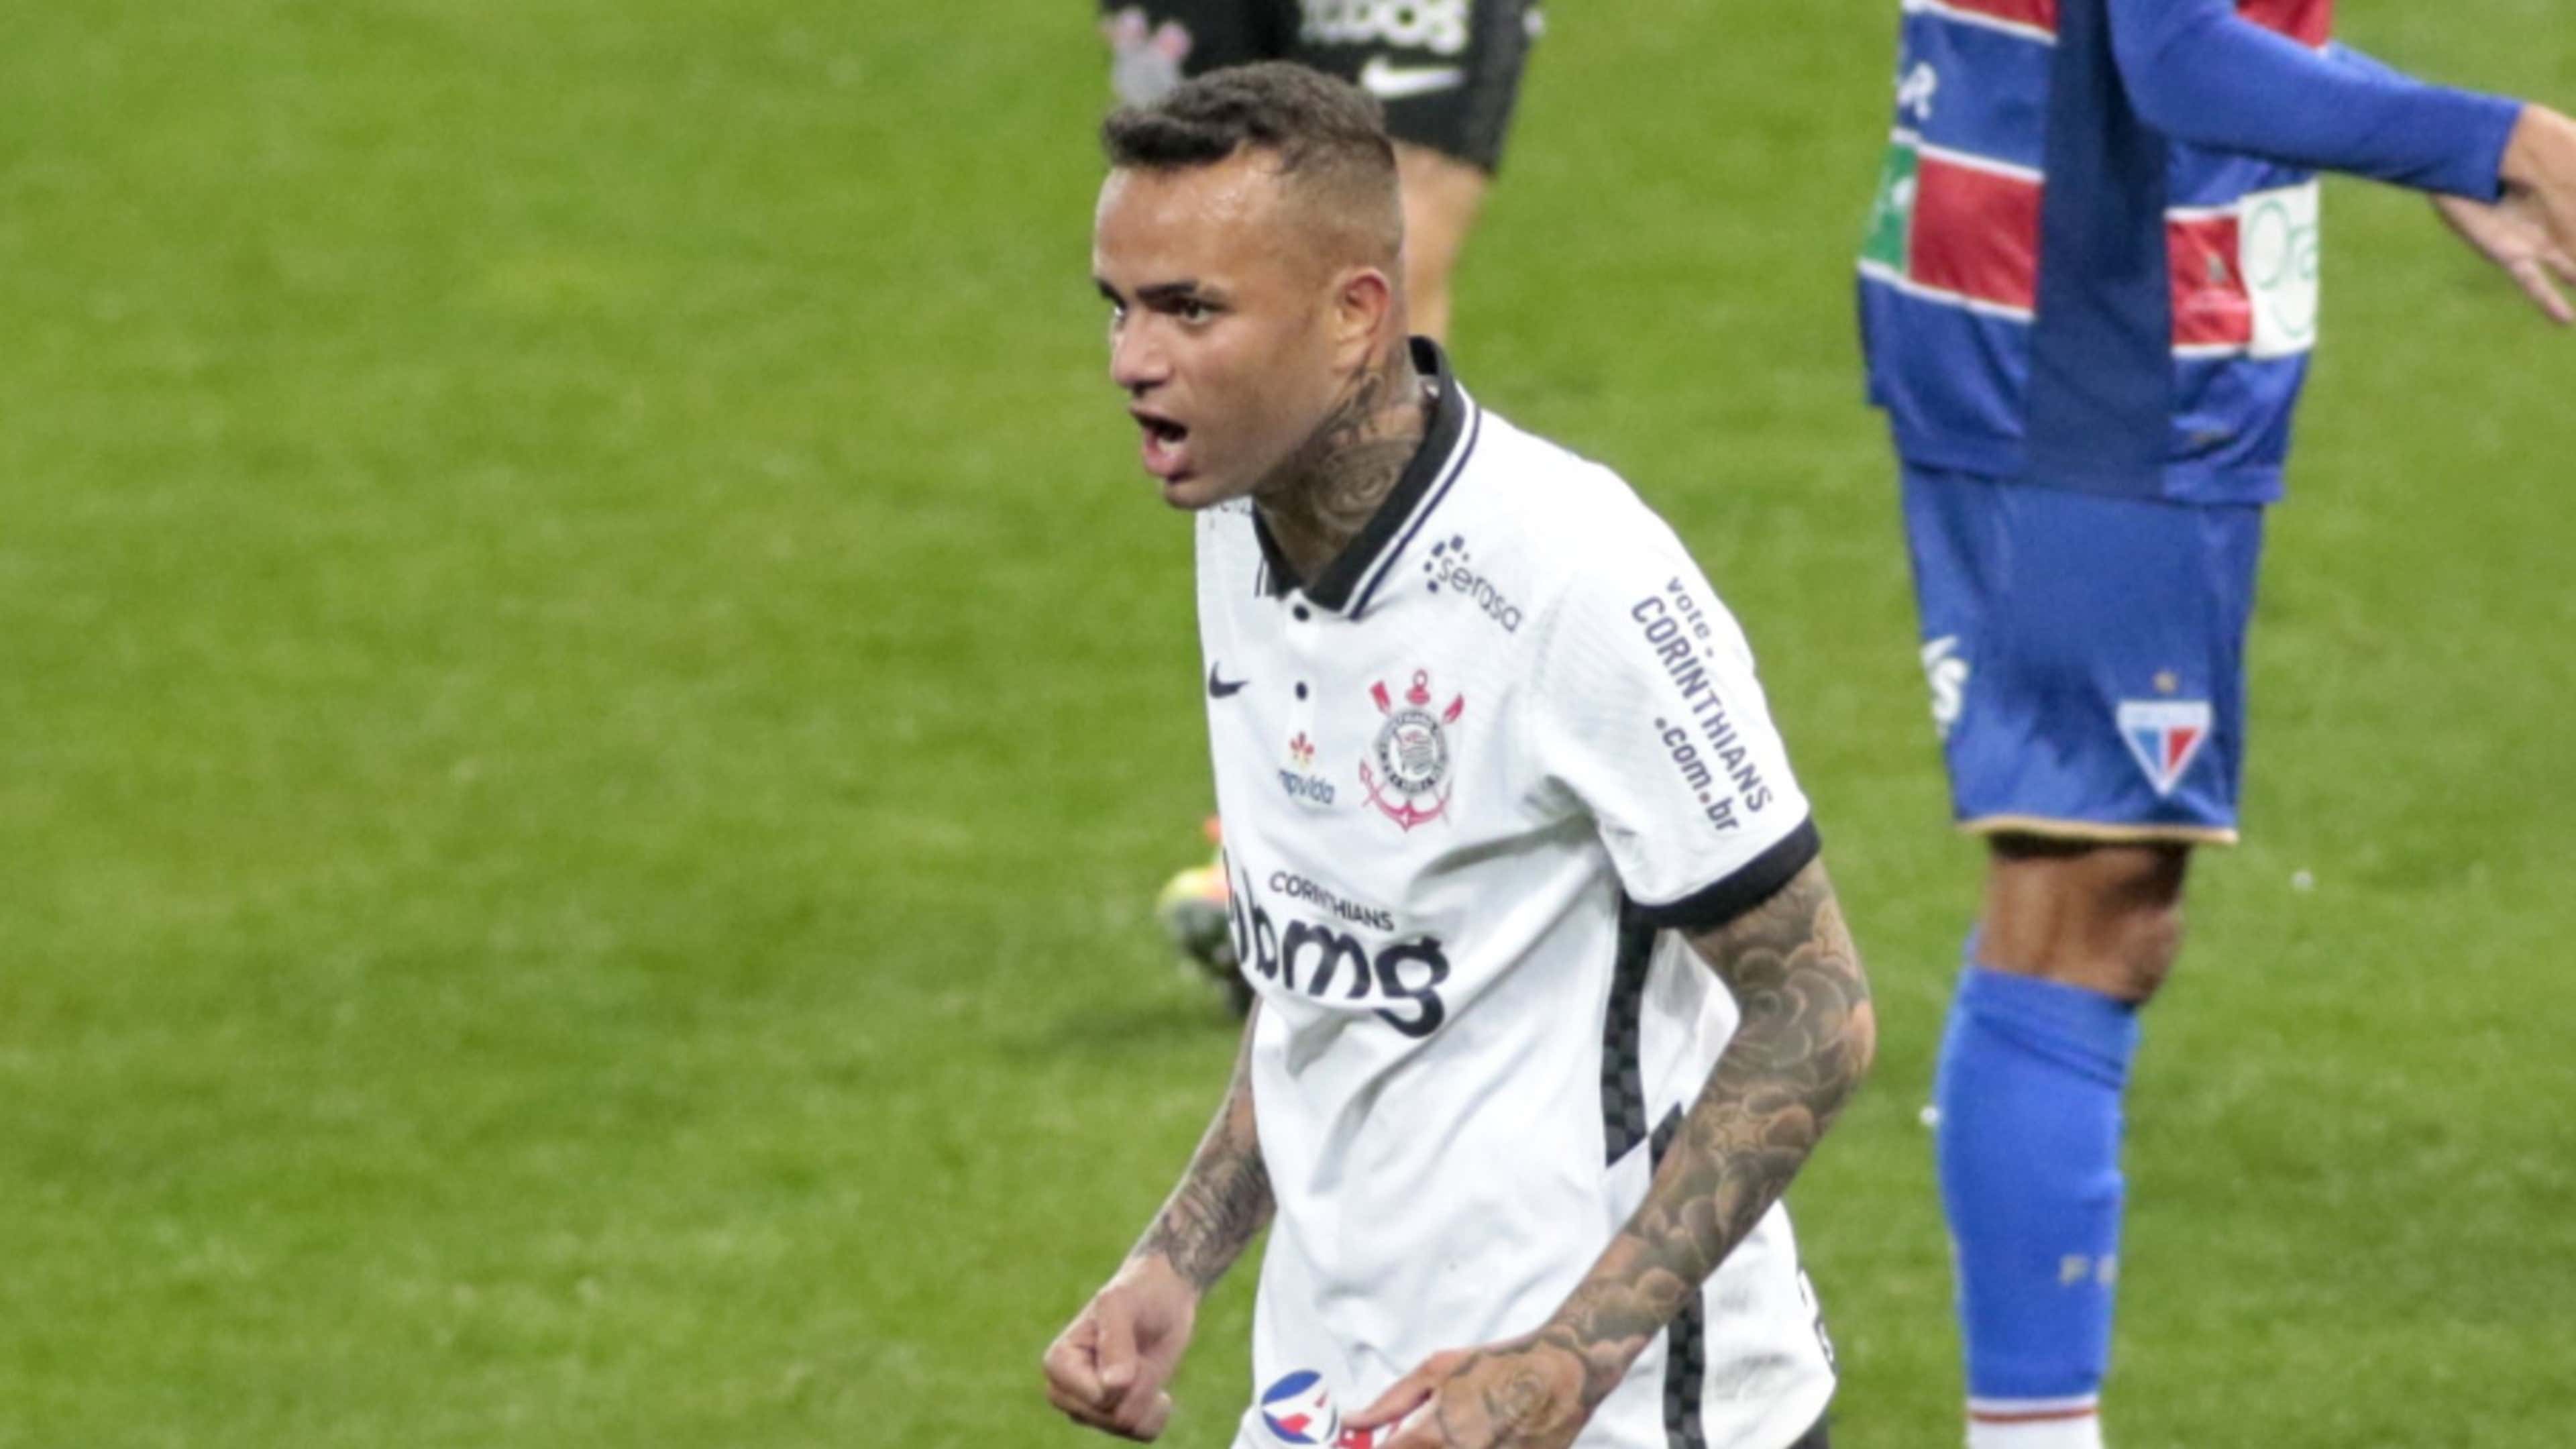 Qual foi o melhor jogador do Corinthians no Brasileirão 2020? - 26